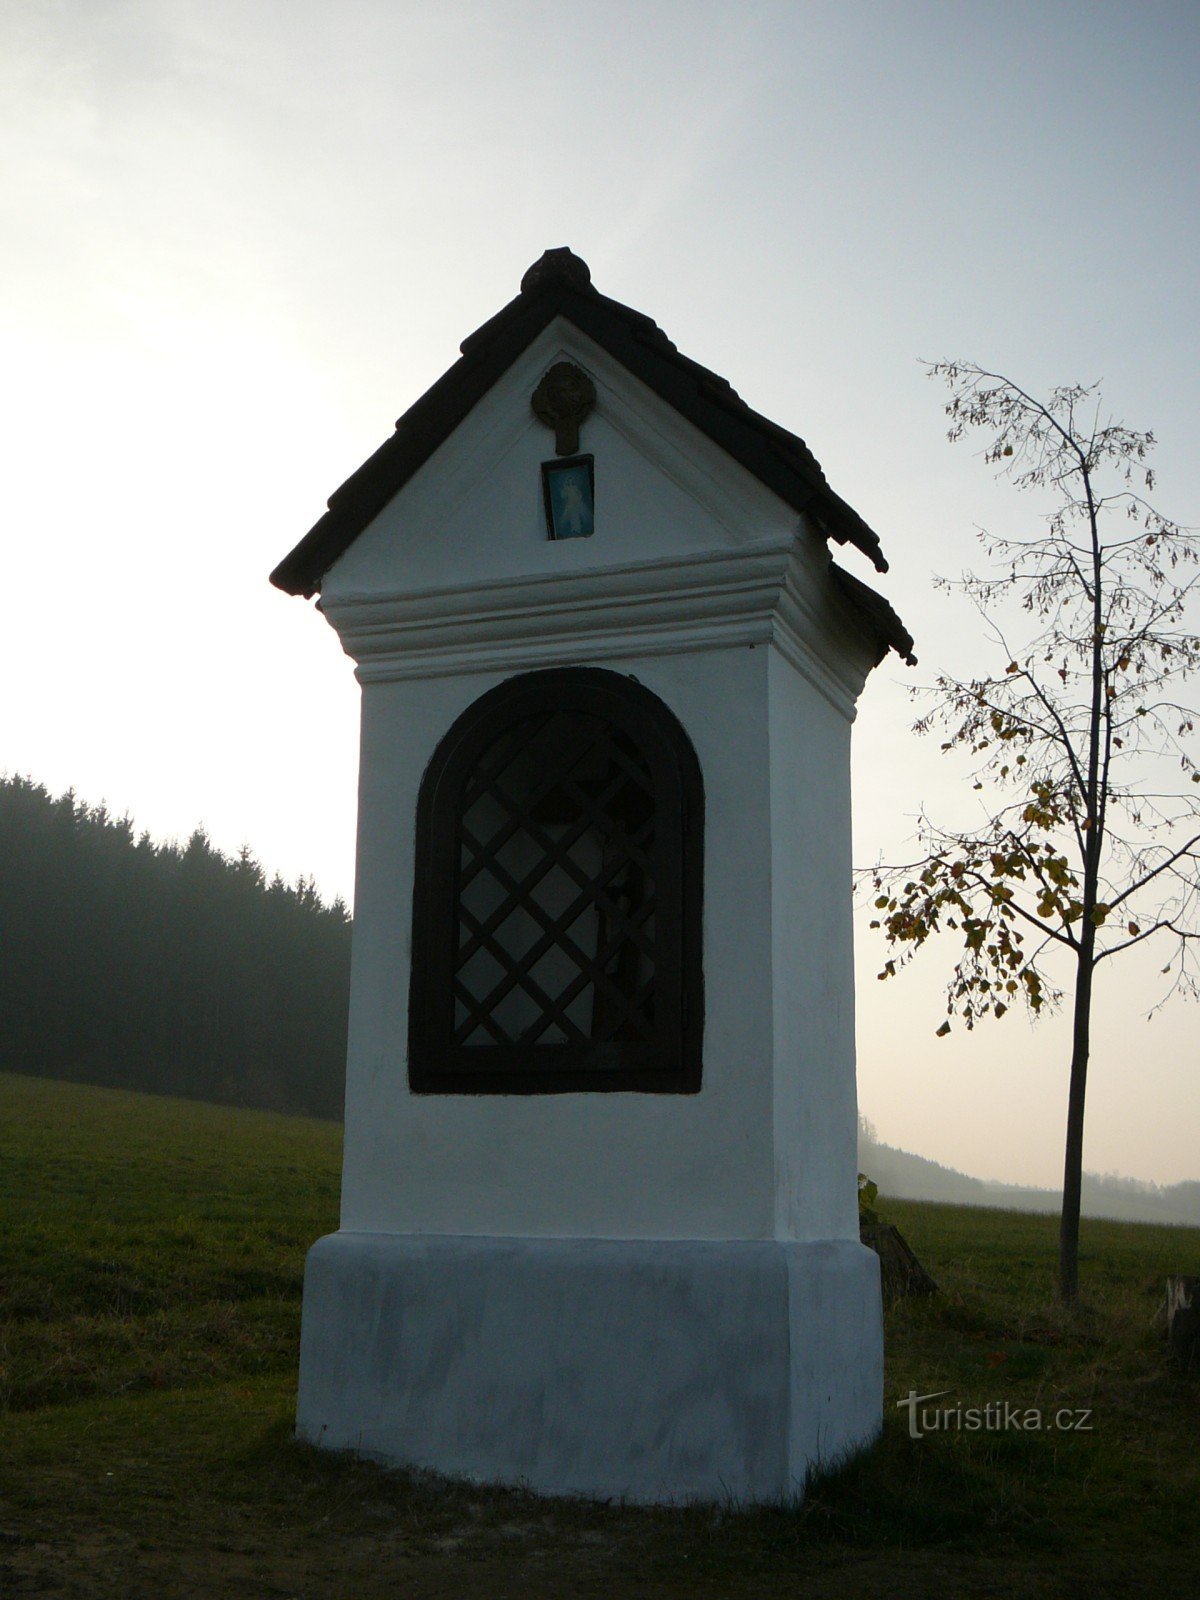 Nhà nguyện dưới Ostružná Đến lưu vực